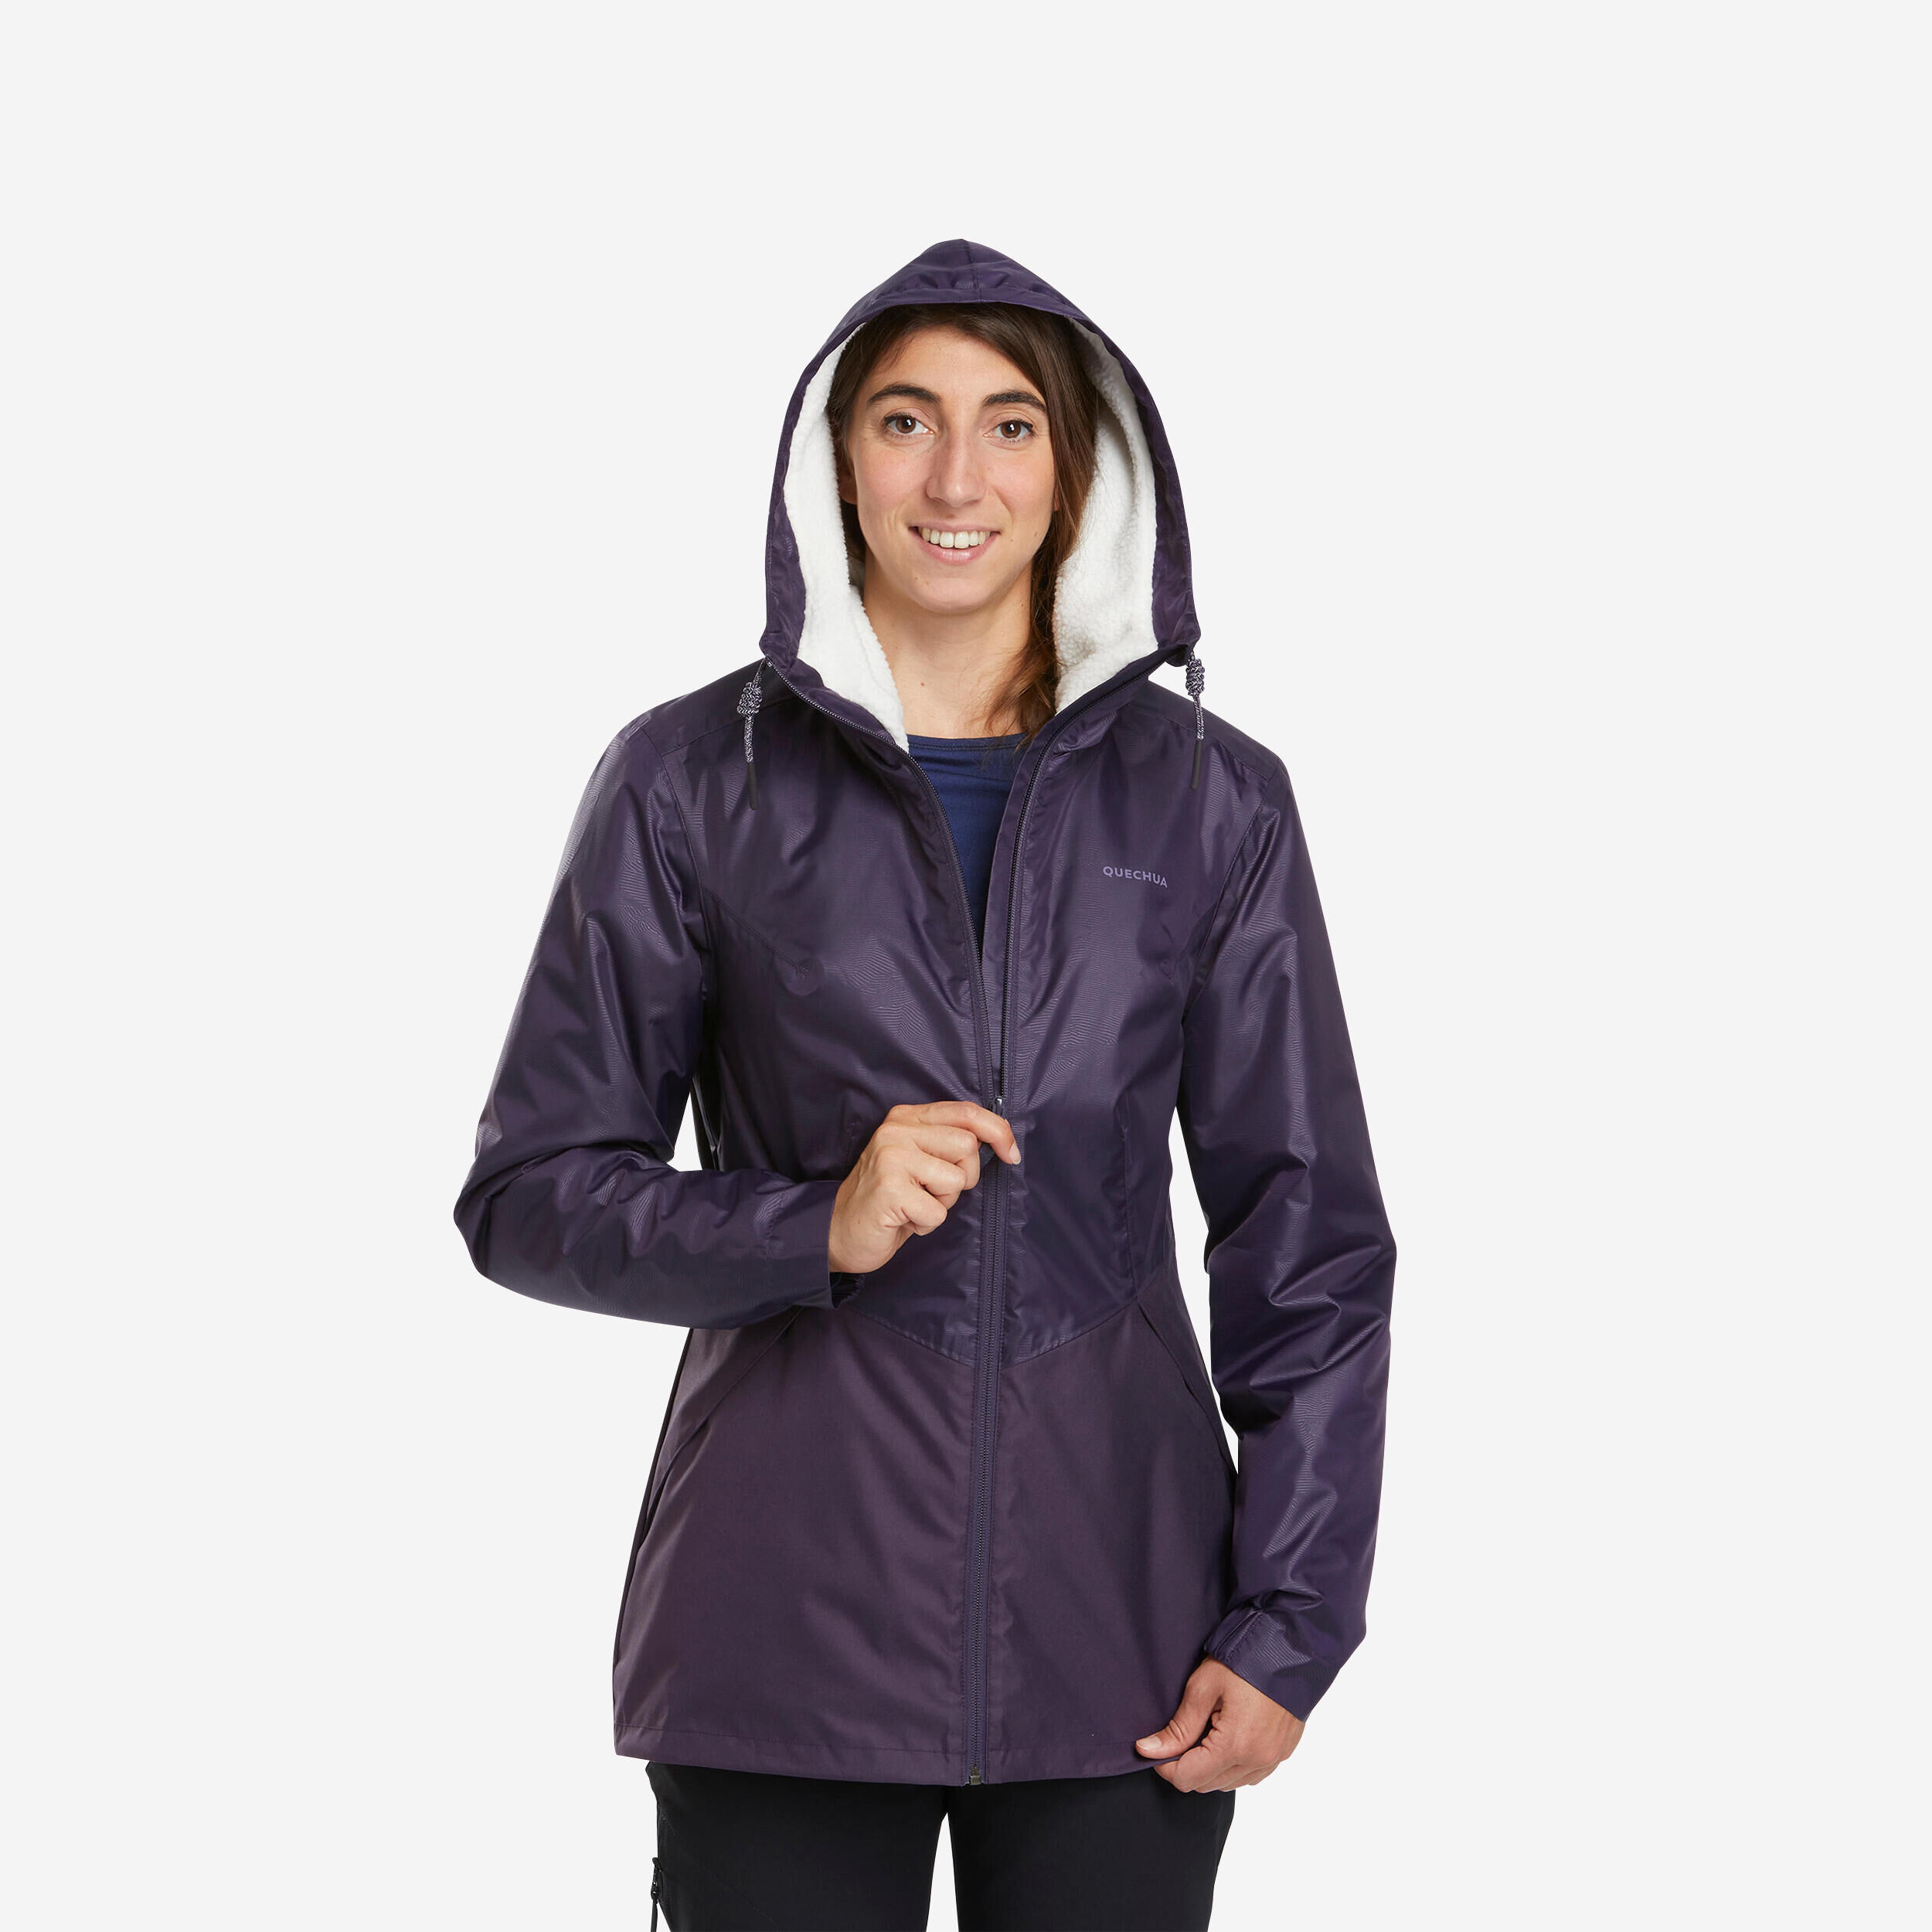 QUECHUA Women’s waterproof winter hiking jacket - SH100 -5°C